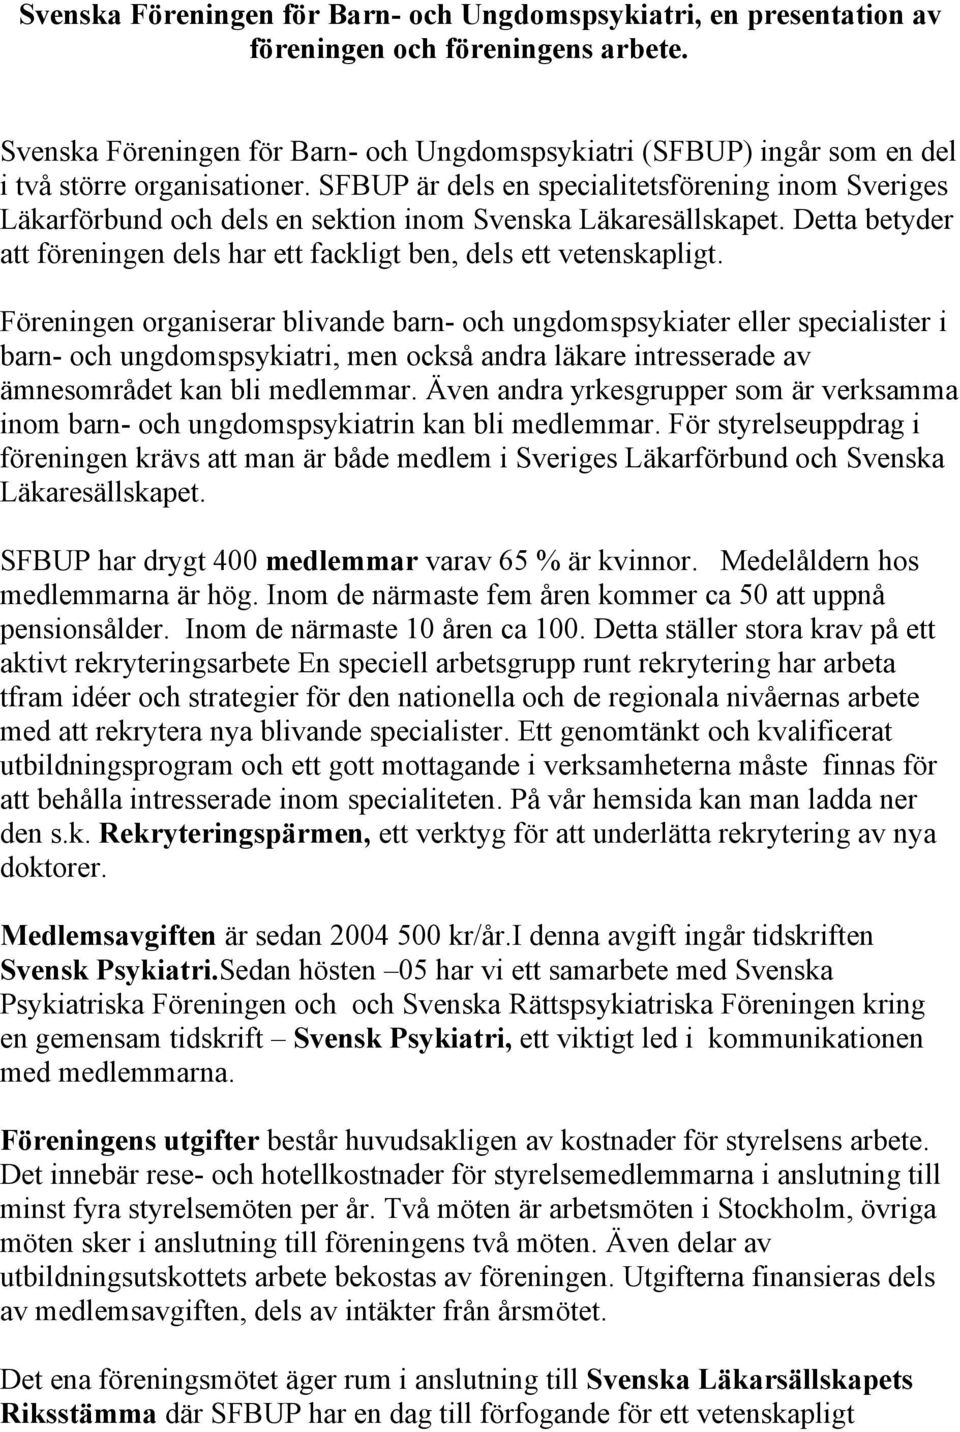 SFBUP är dels en specialitetsförening inom Sveriges Läkarförbund och dels en sektion inom Svenska Läkaresällskapet. Detta betyder att föreningen dels har ett fackligt ben, dels ett vetenskapligt.